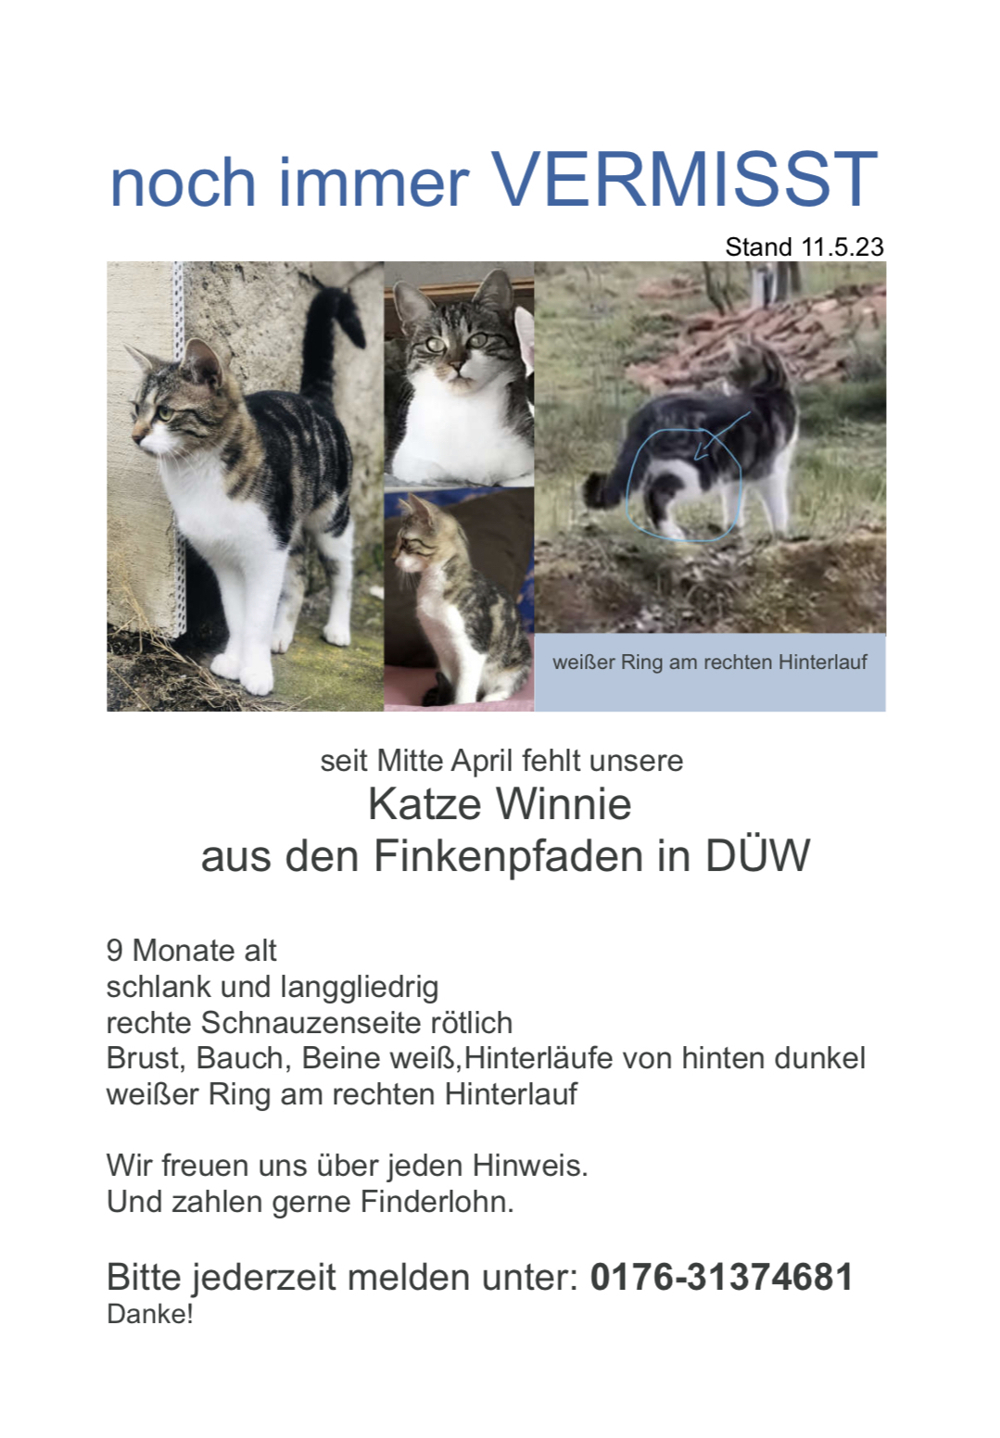 Finderlohn 400EUR Katze Winnie aus Bad Dürkheim vermisst